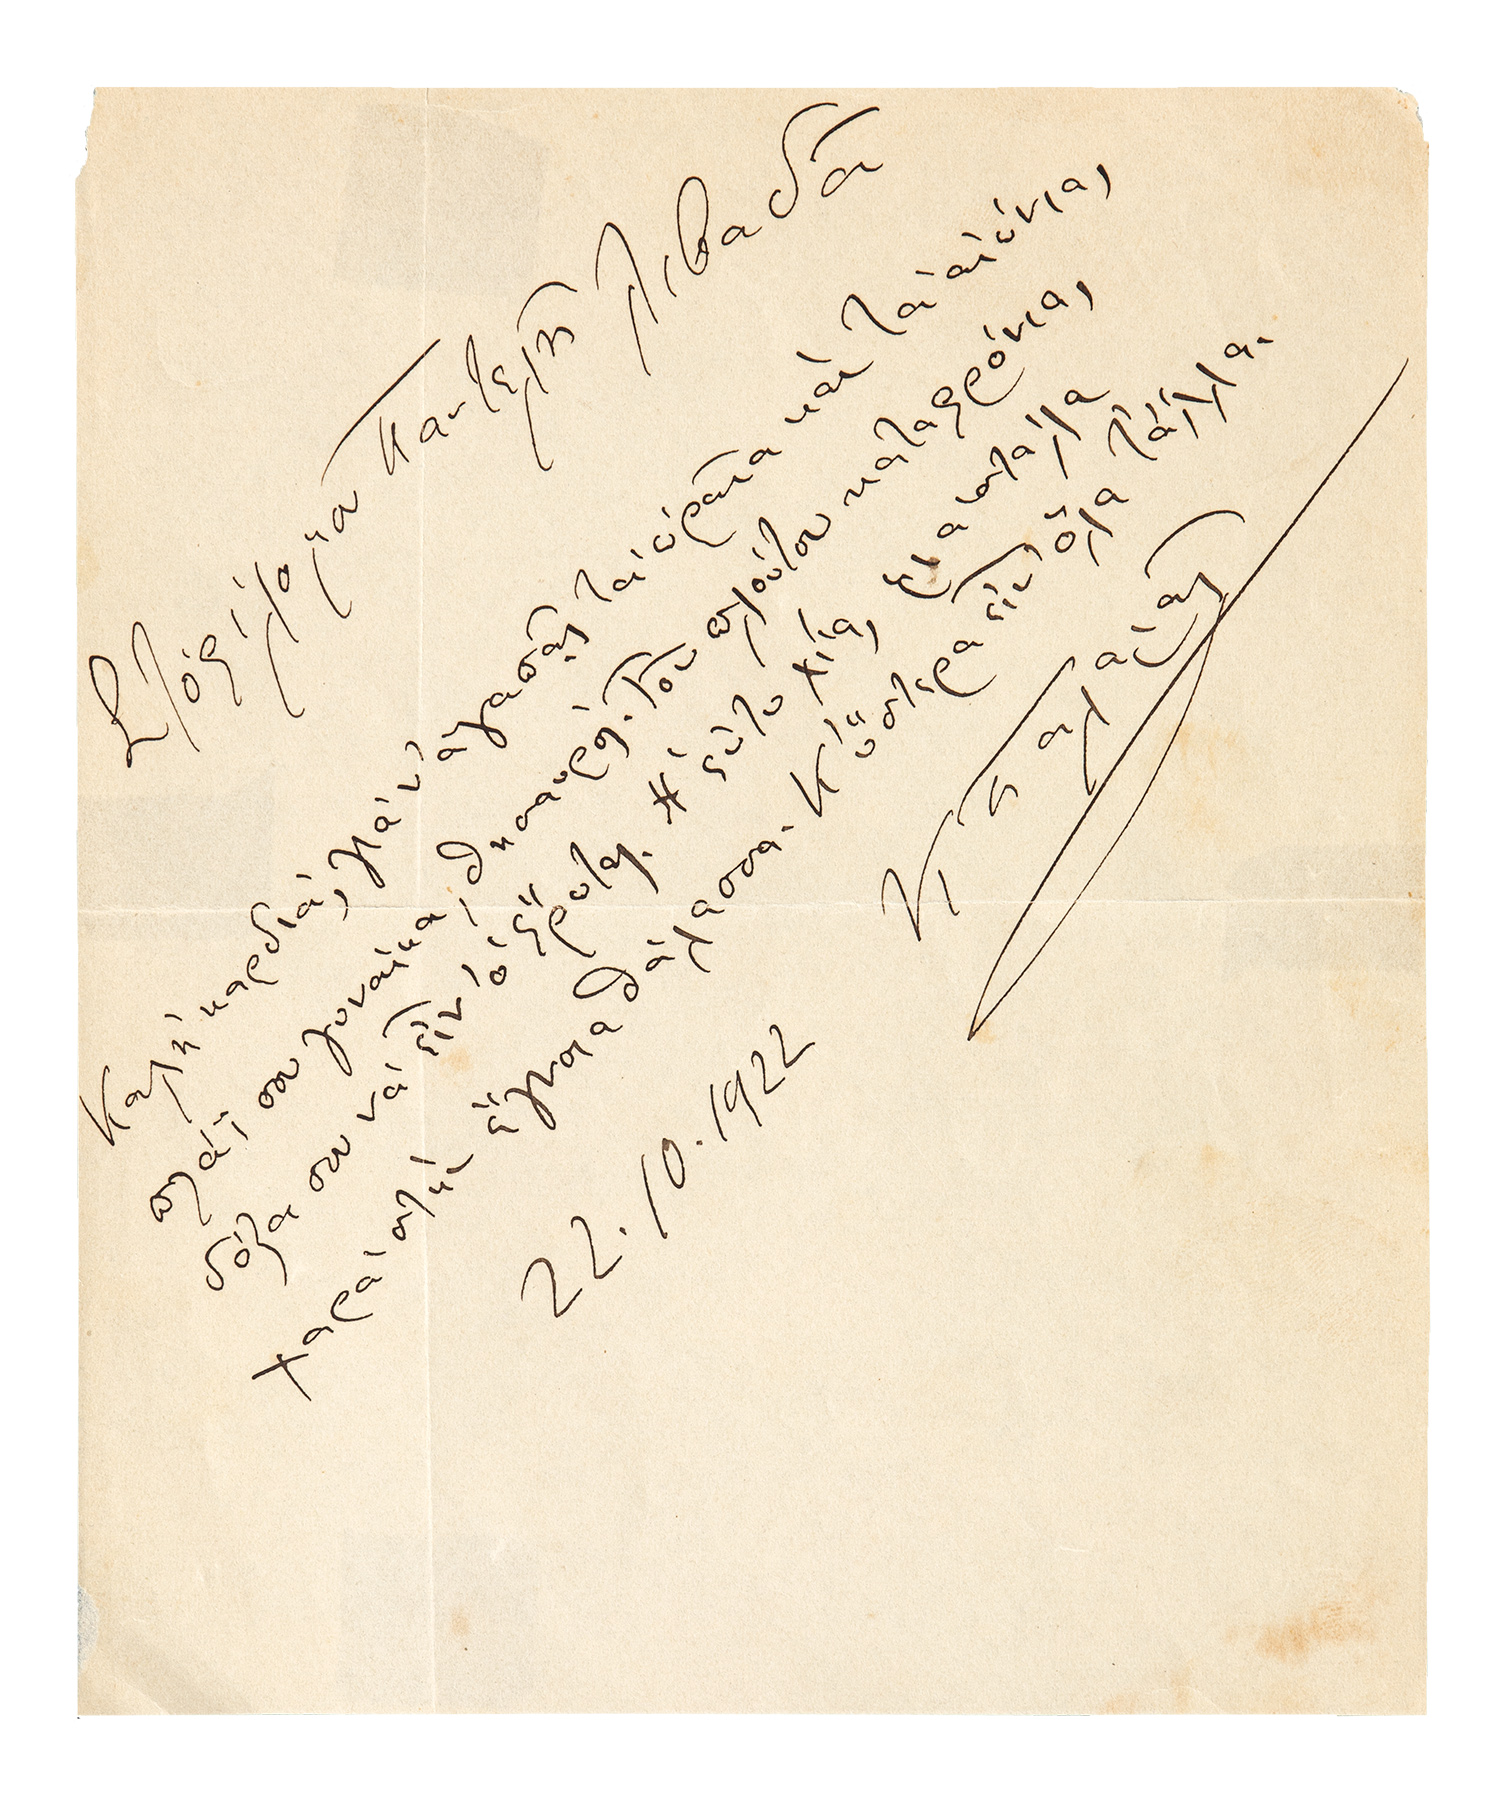 ΠΑΛΑΜΑΣ, Κωστής, 1859-1943, ποιητής.